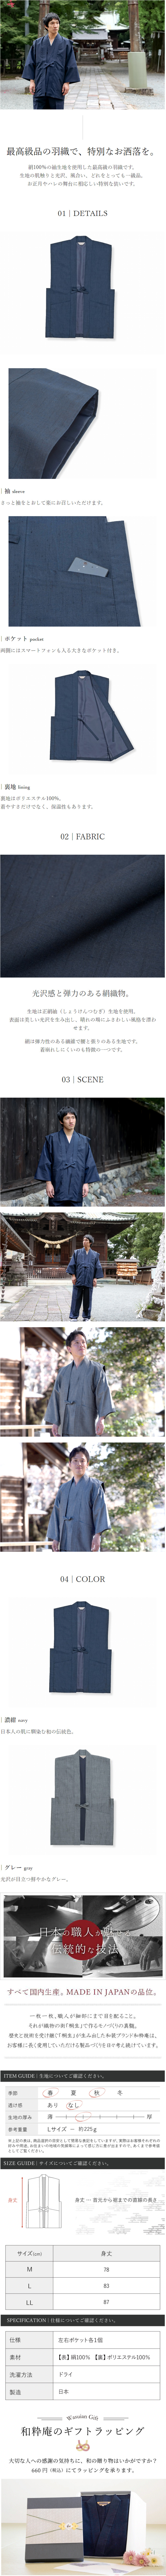 作務衣羽織 日本製 正絹羽織 作務衣用 シルク100% 通年 : 8011 : 作務